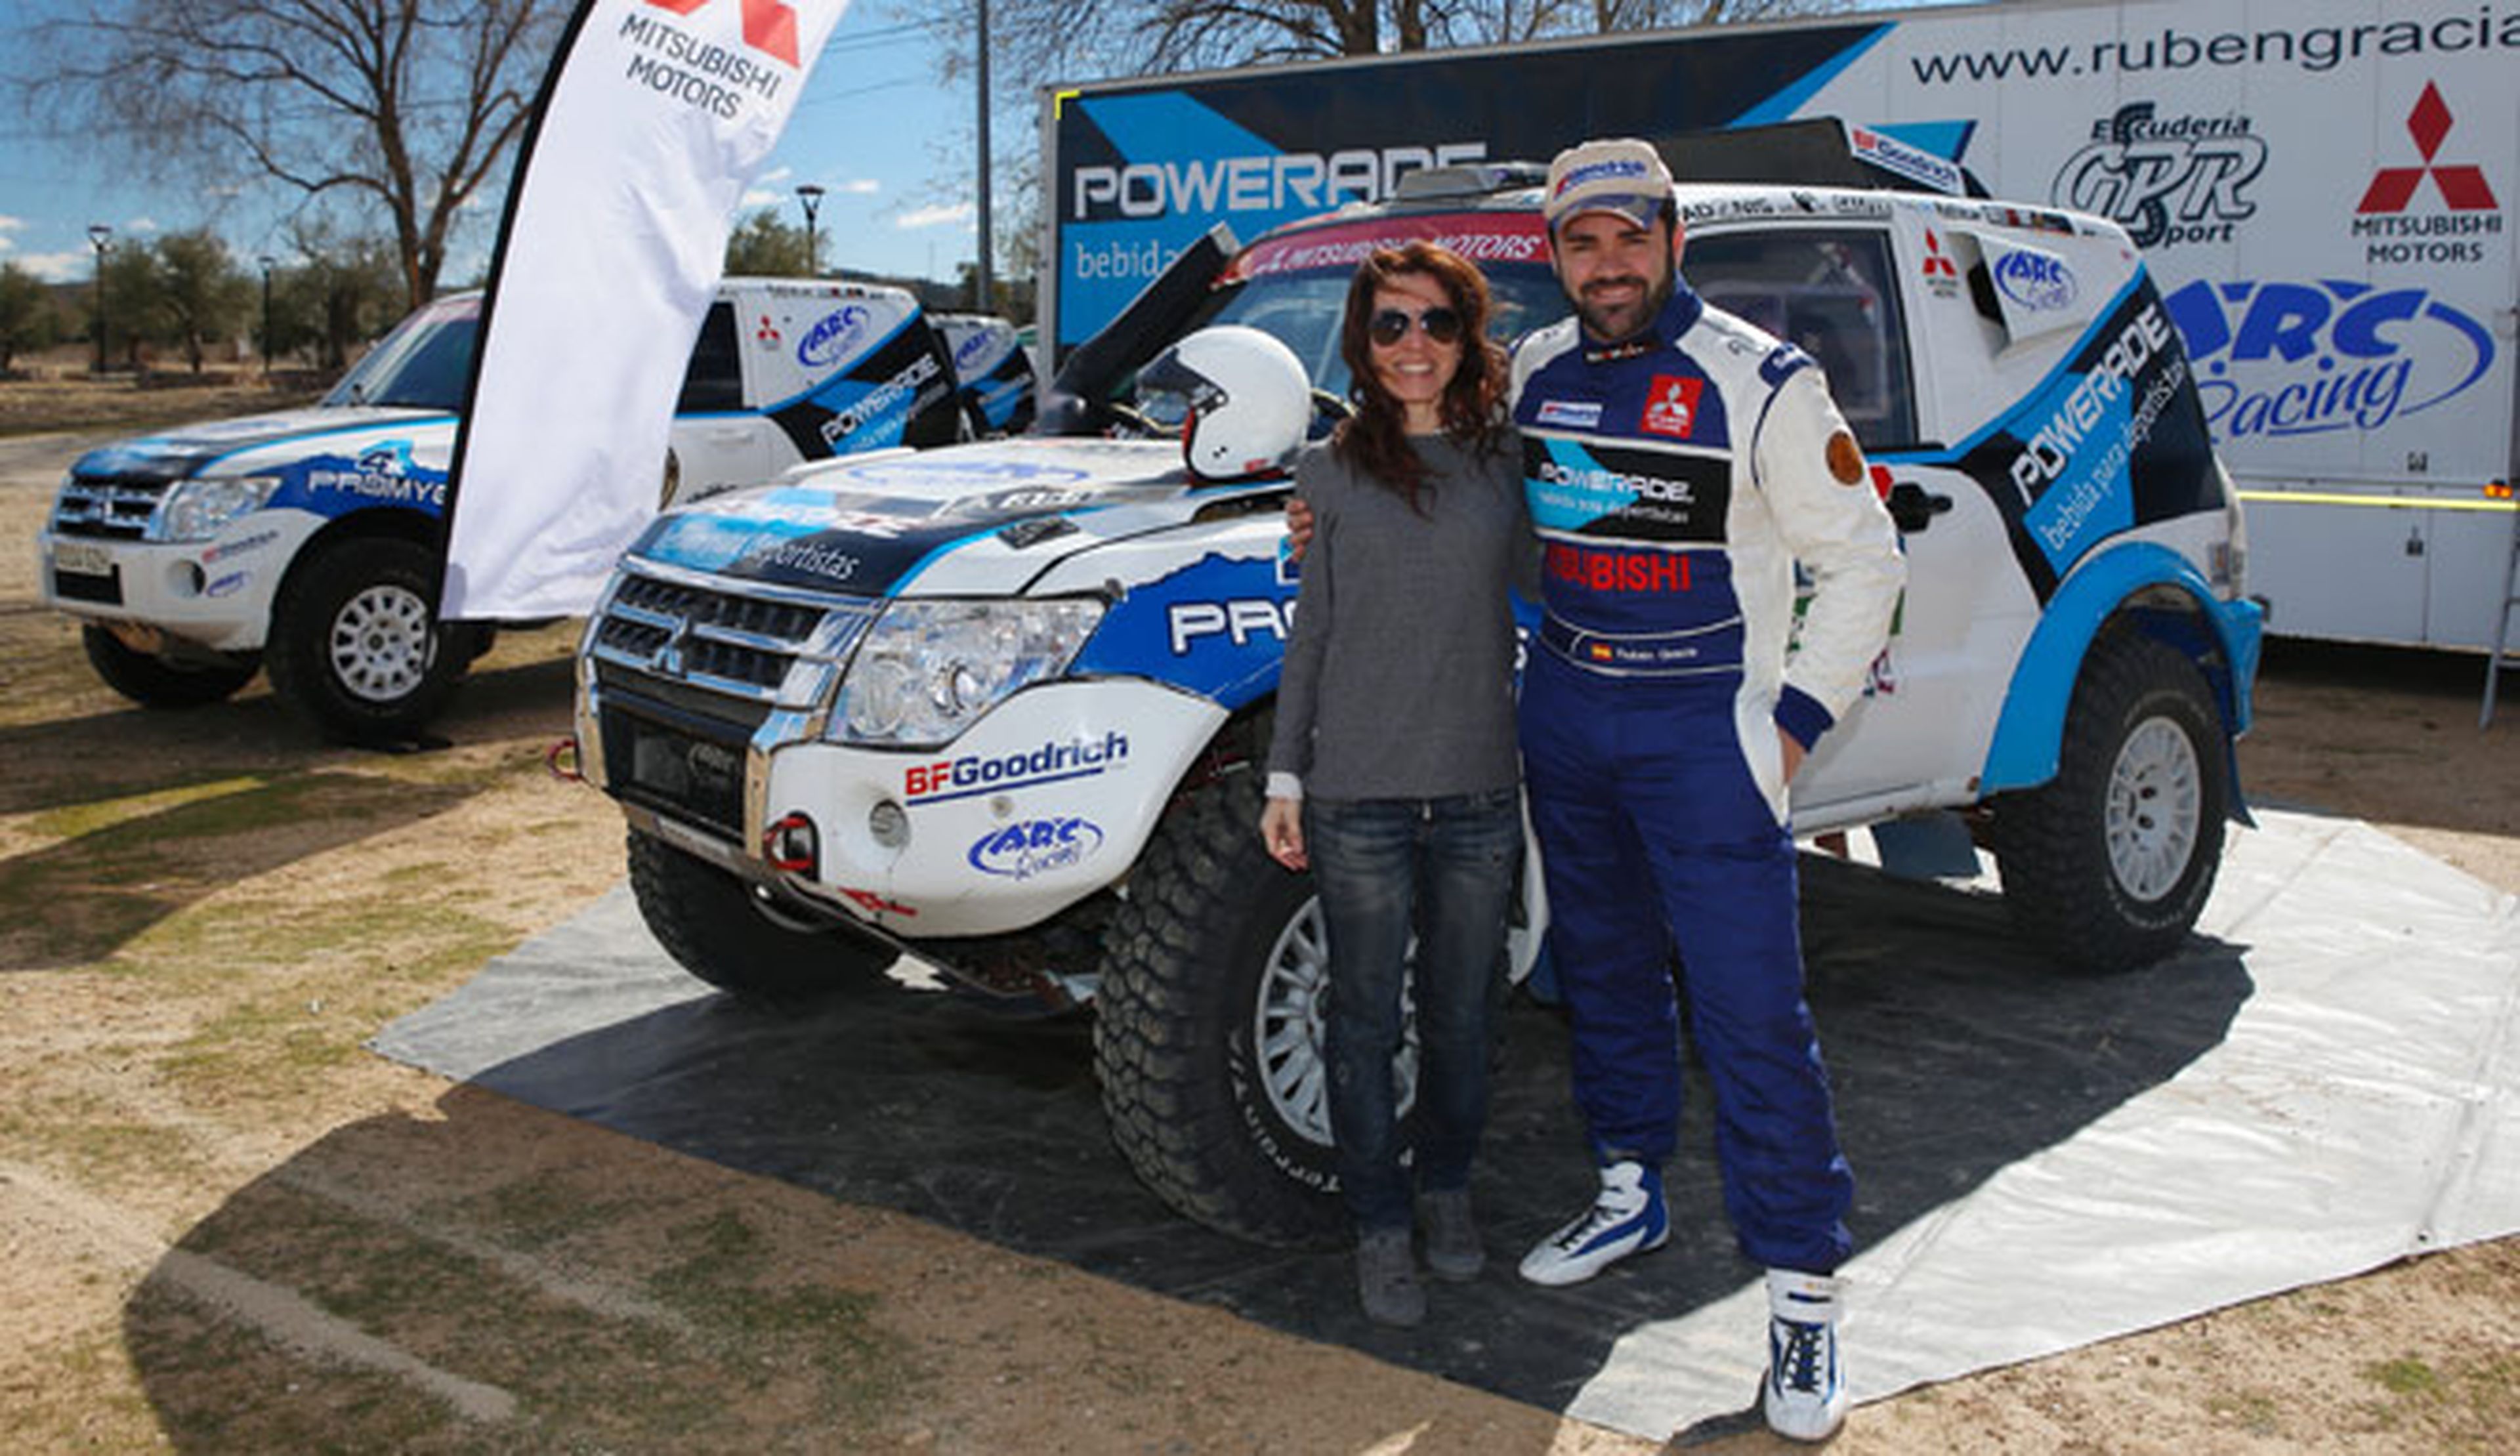 Entrevista a Rubén Gracia, piloto Mitsubishi en el Dakar